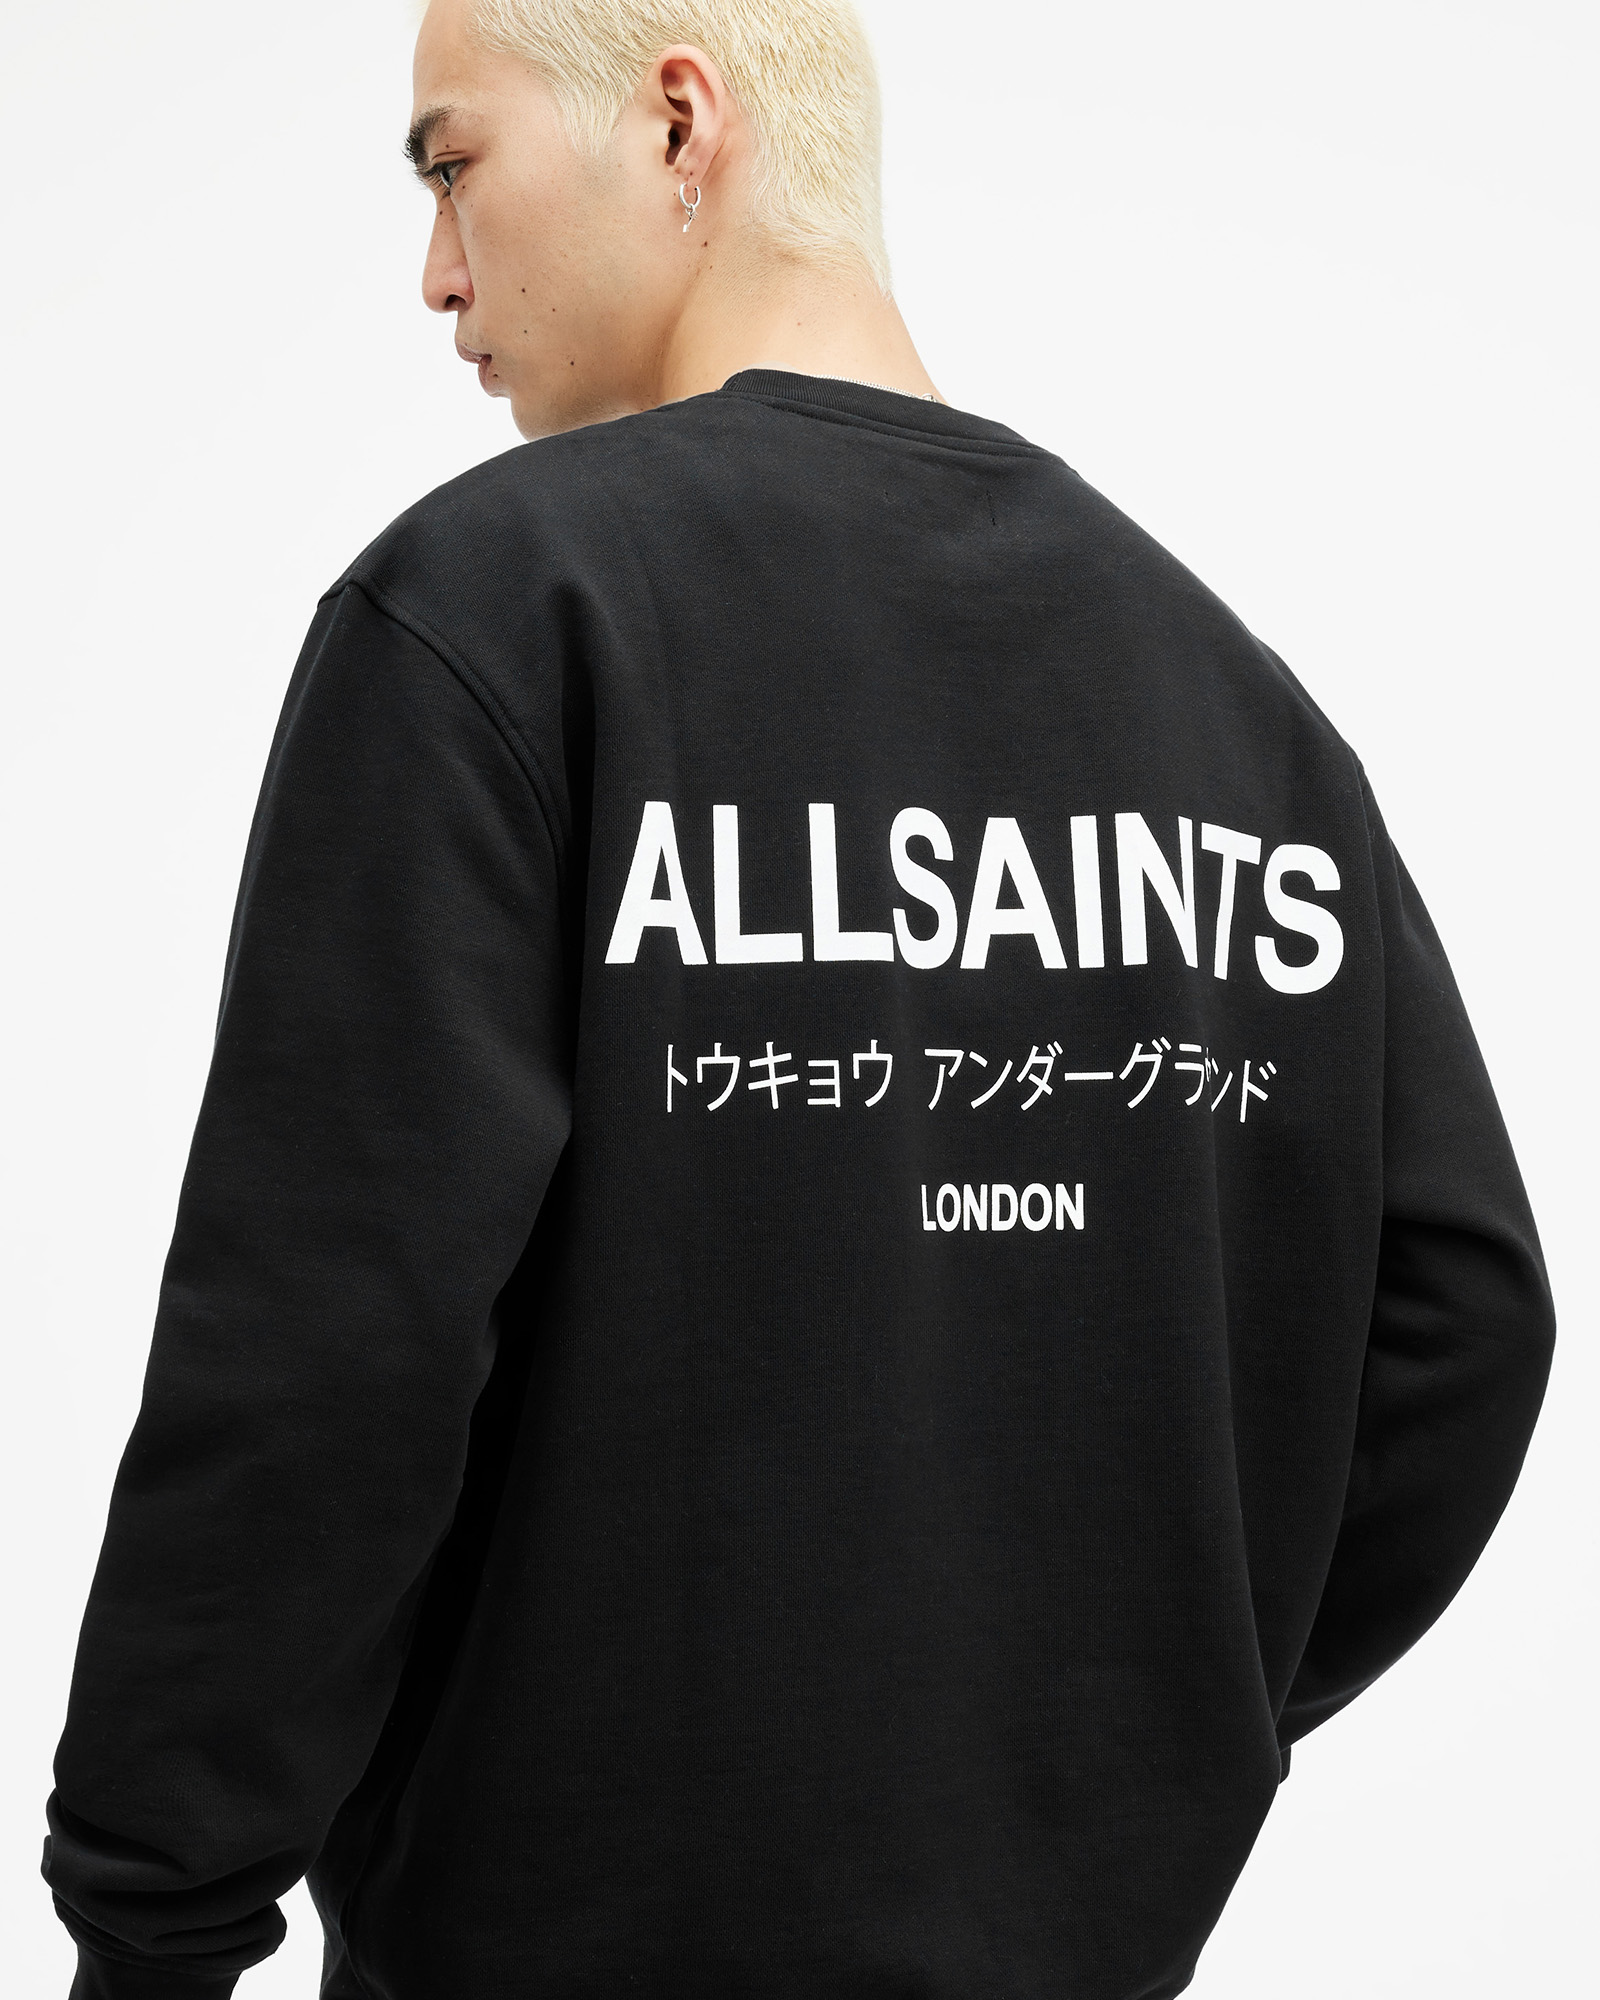 AllSaints Underground Sweatshirt,, Jet Black